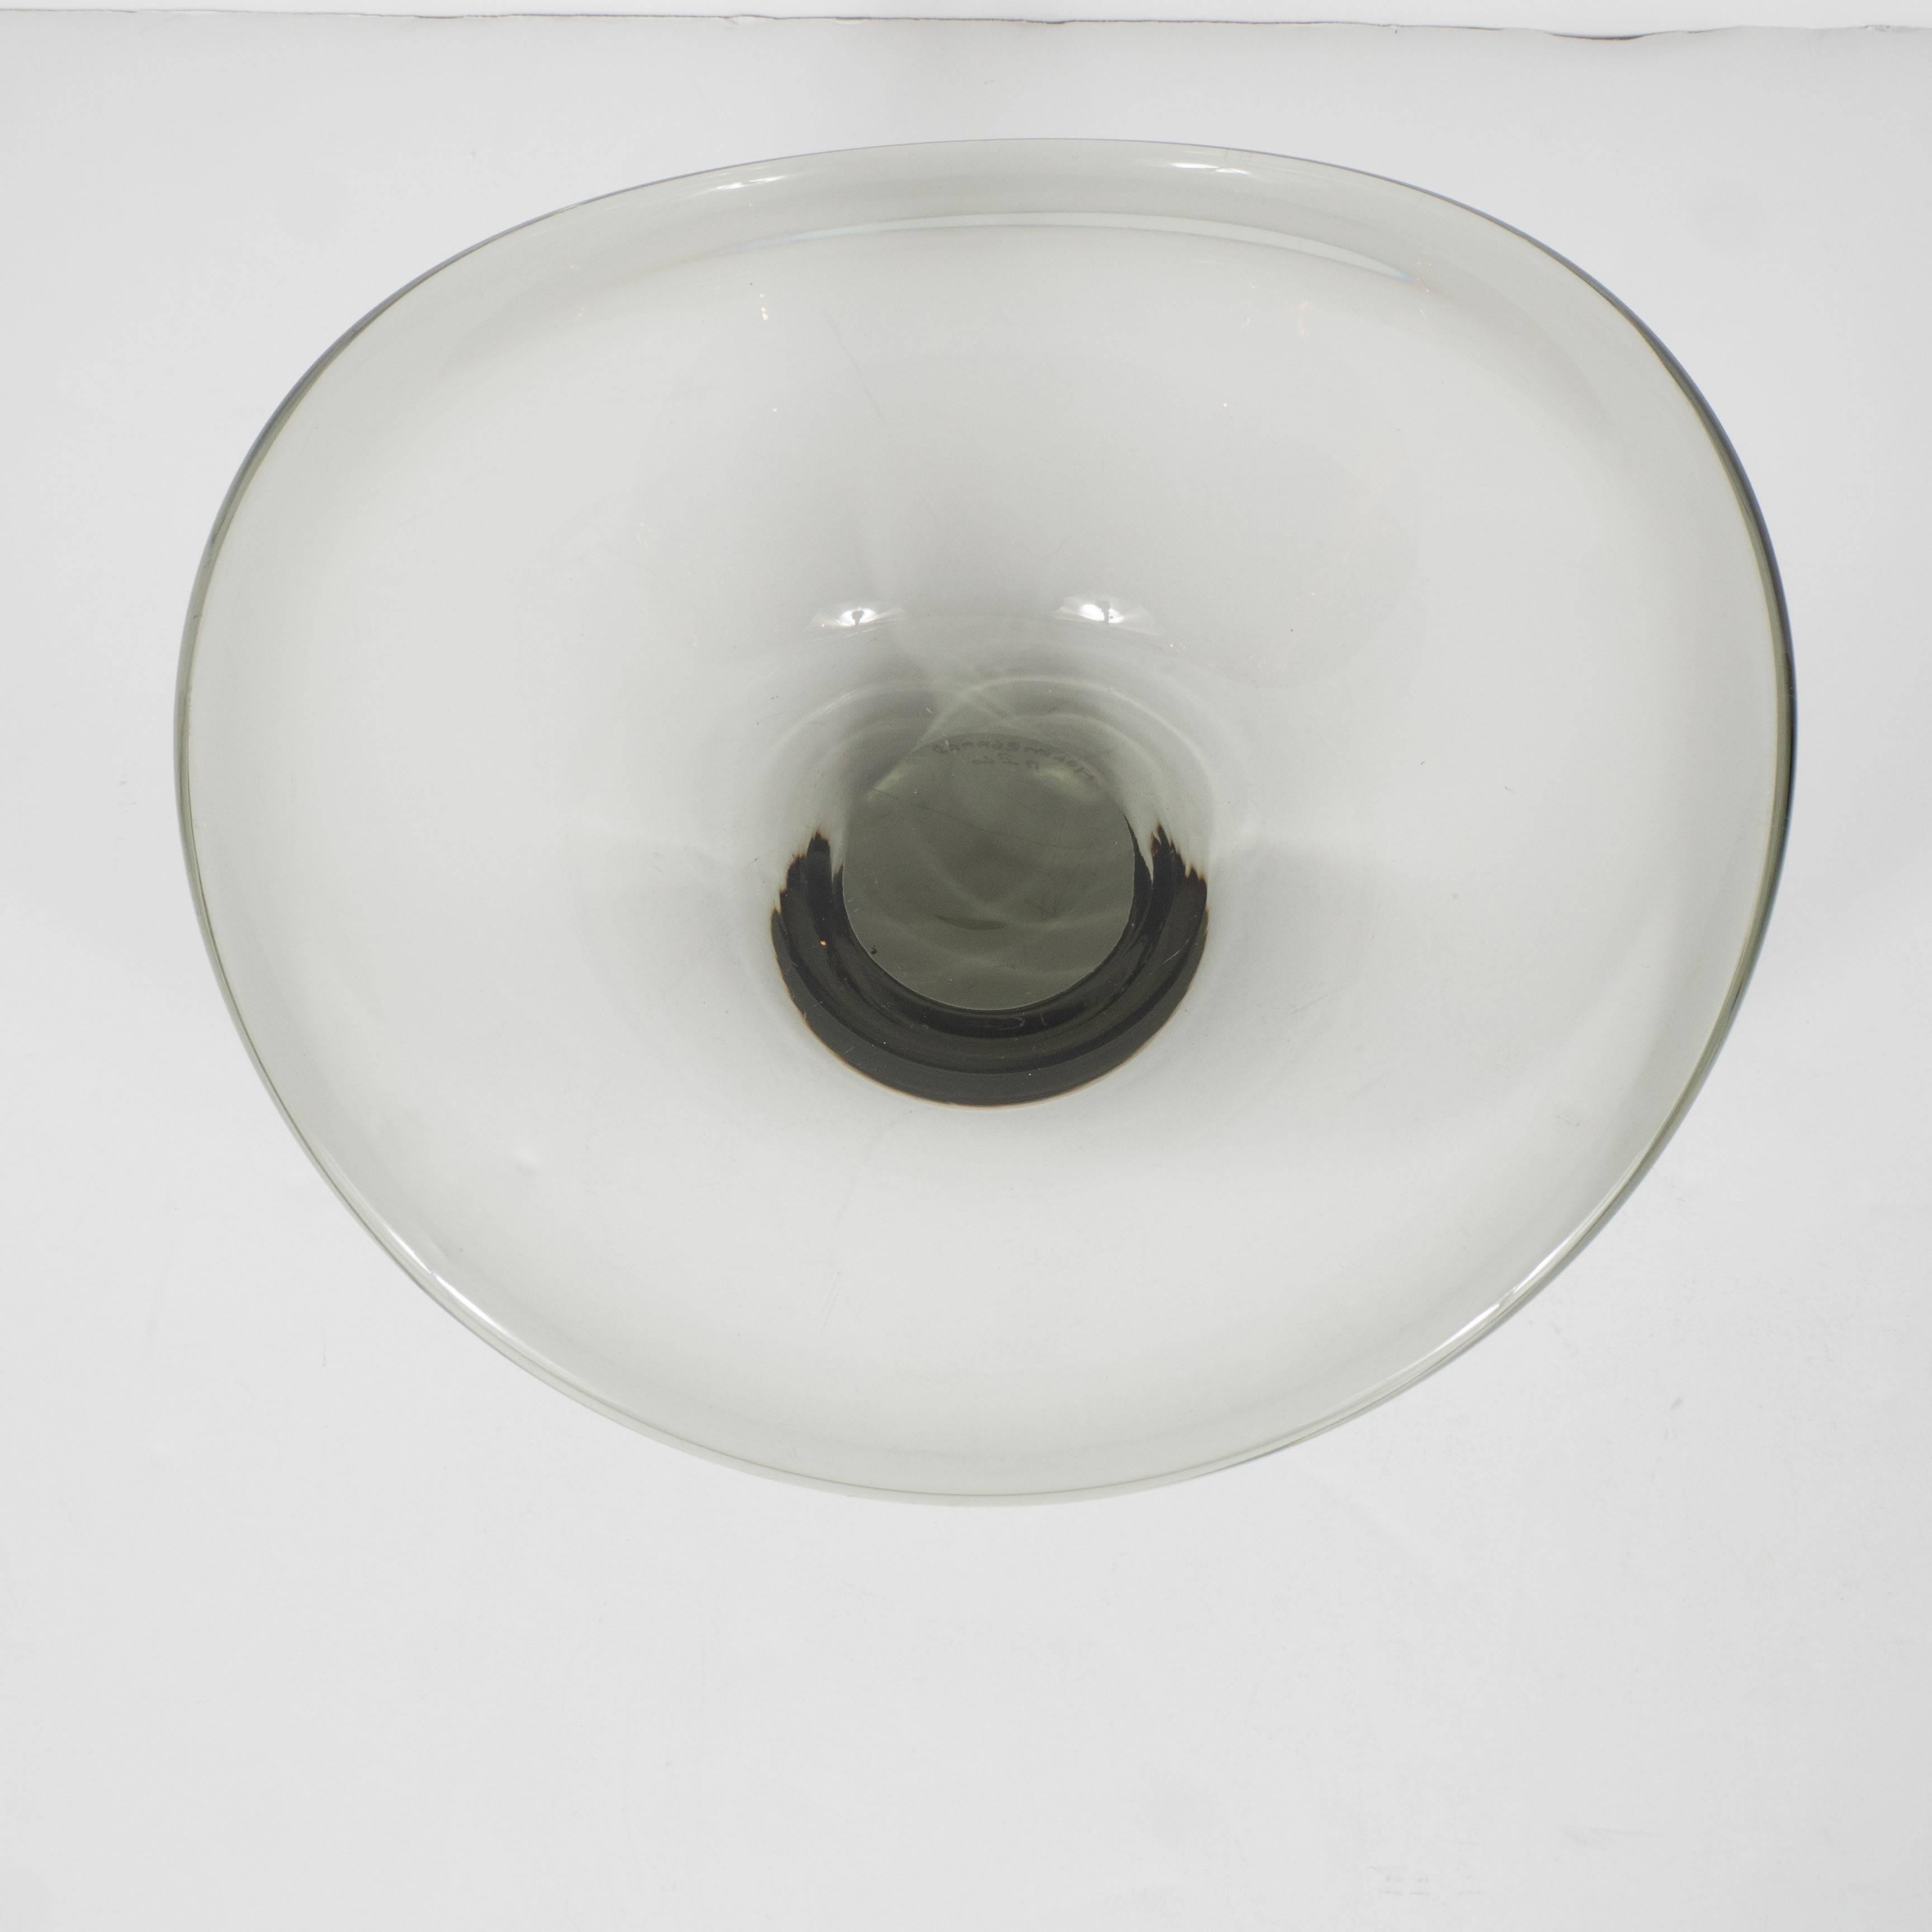 Un bol incurvé en verre fumé du milieu du siècle par Holmegaard du Danemark. La base plate et la forme circulaire présentent des bords arrondis en forme de vagues. Soufflé à la main en verre gris fumé avec des variations de couleur. Signé avec la